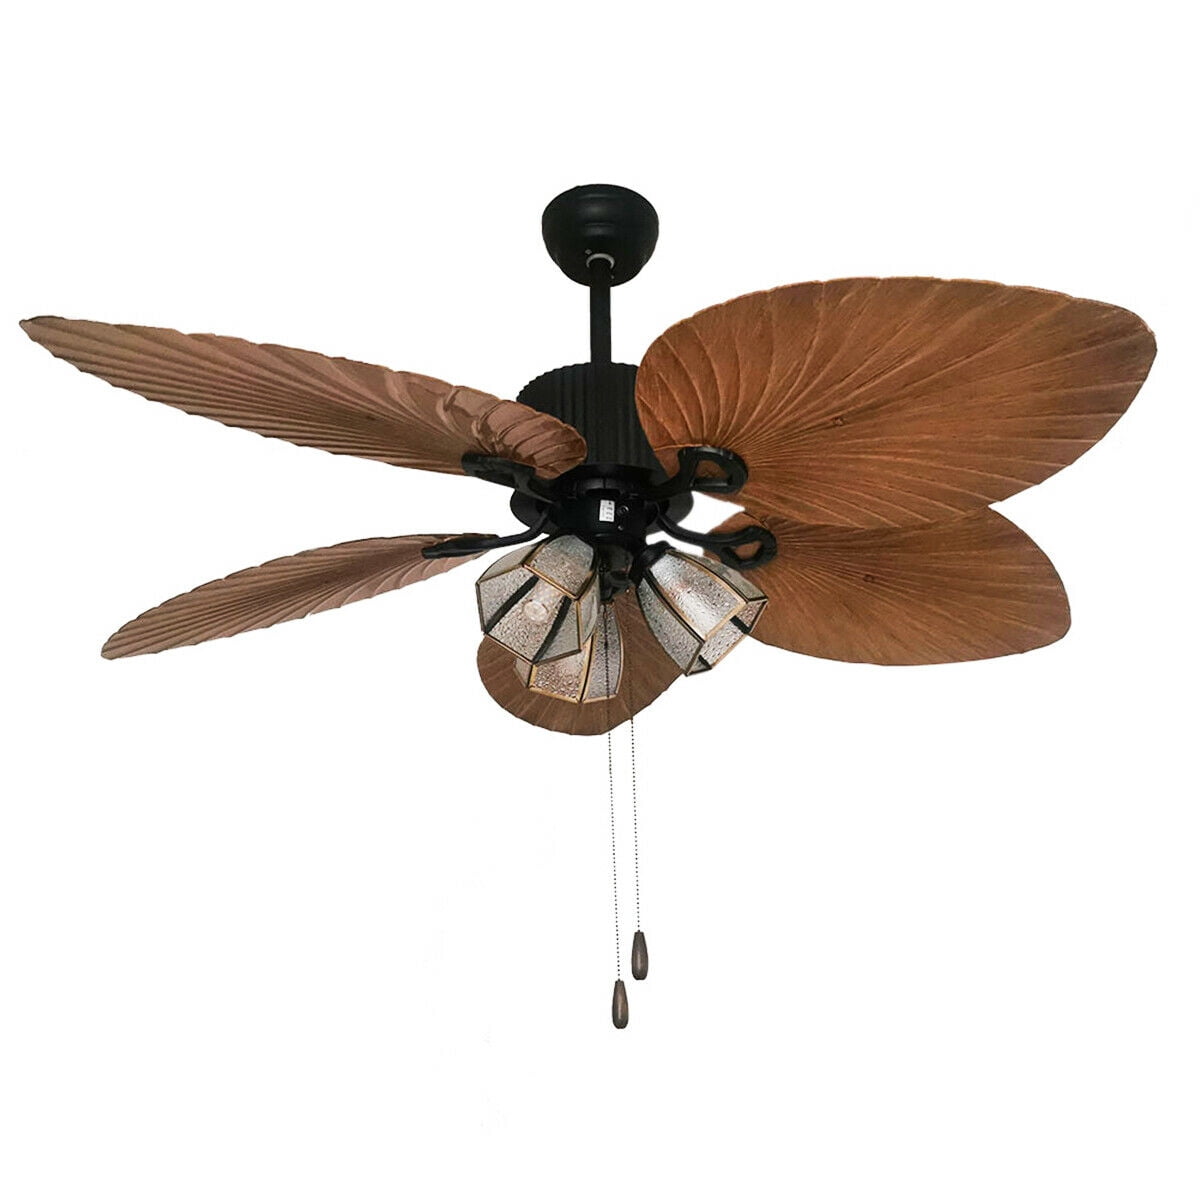 Tfcfl 52 Ceiling Fan With Light 5, Ceiling Fan Leaf Size